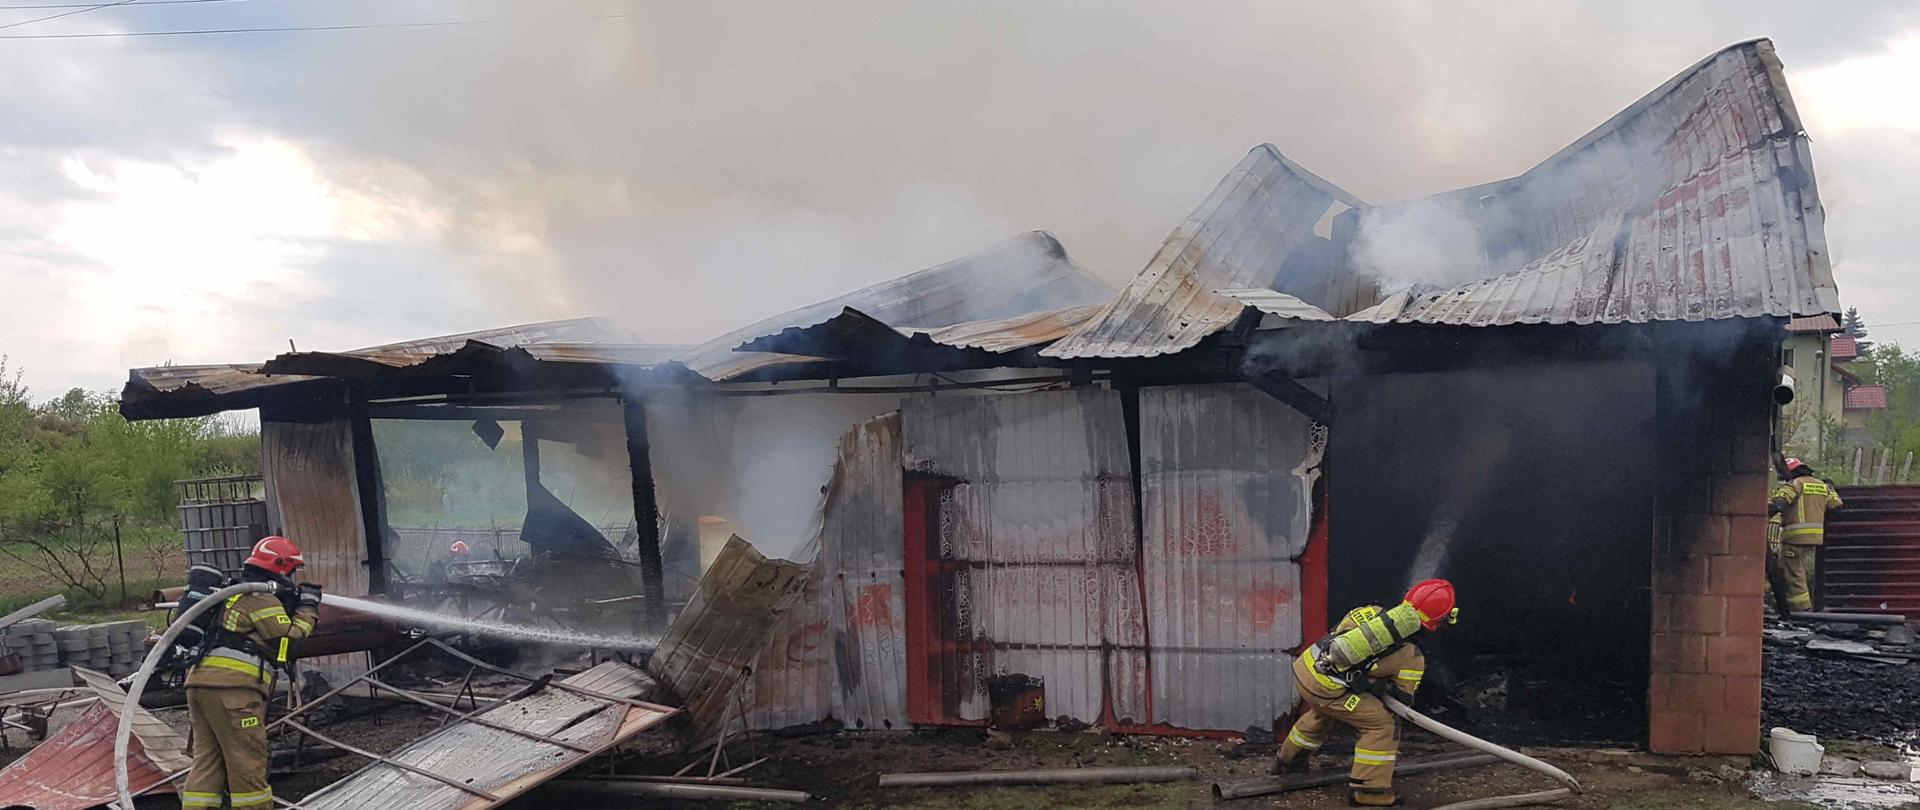 Zdjęcie zrobione w dzień. Zdjęcie przedstawia palący się budynek gospodarczy. Na zdjęciu widać dwóch strażaków podających dwa prądy wody w natarciu na palący się budynek.